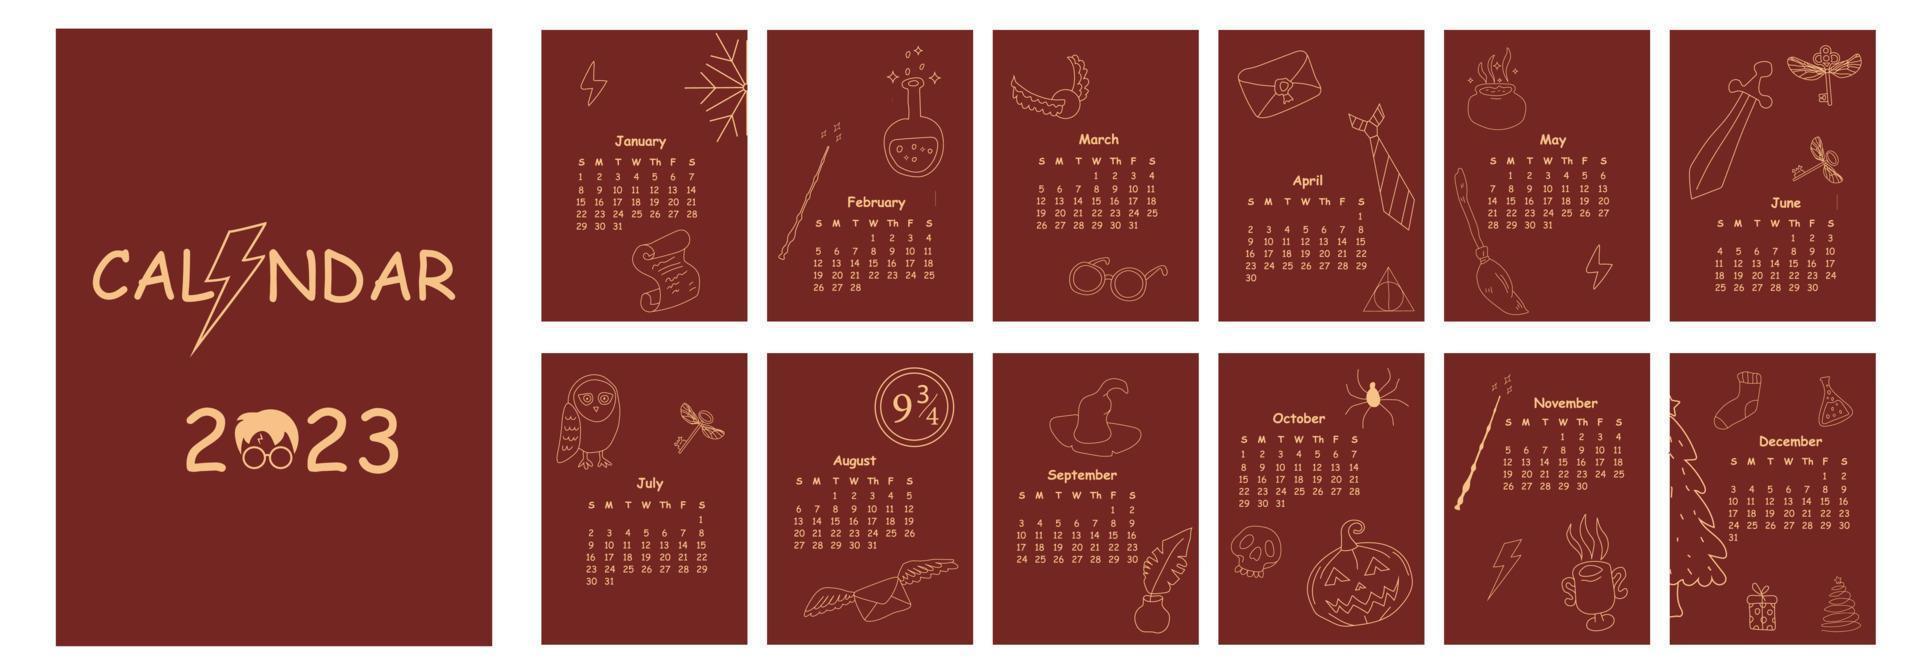 projeto de calendário 2023. estilo minimalista de planejador de calendário mágico de doodle desenhado à mão, organizador anual. ilustração vetorial. cor vermelha e dourada. vetor